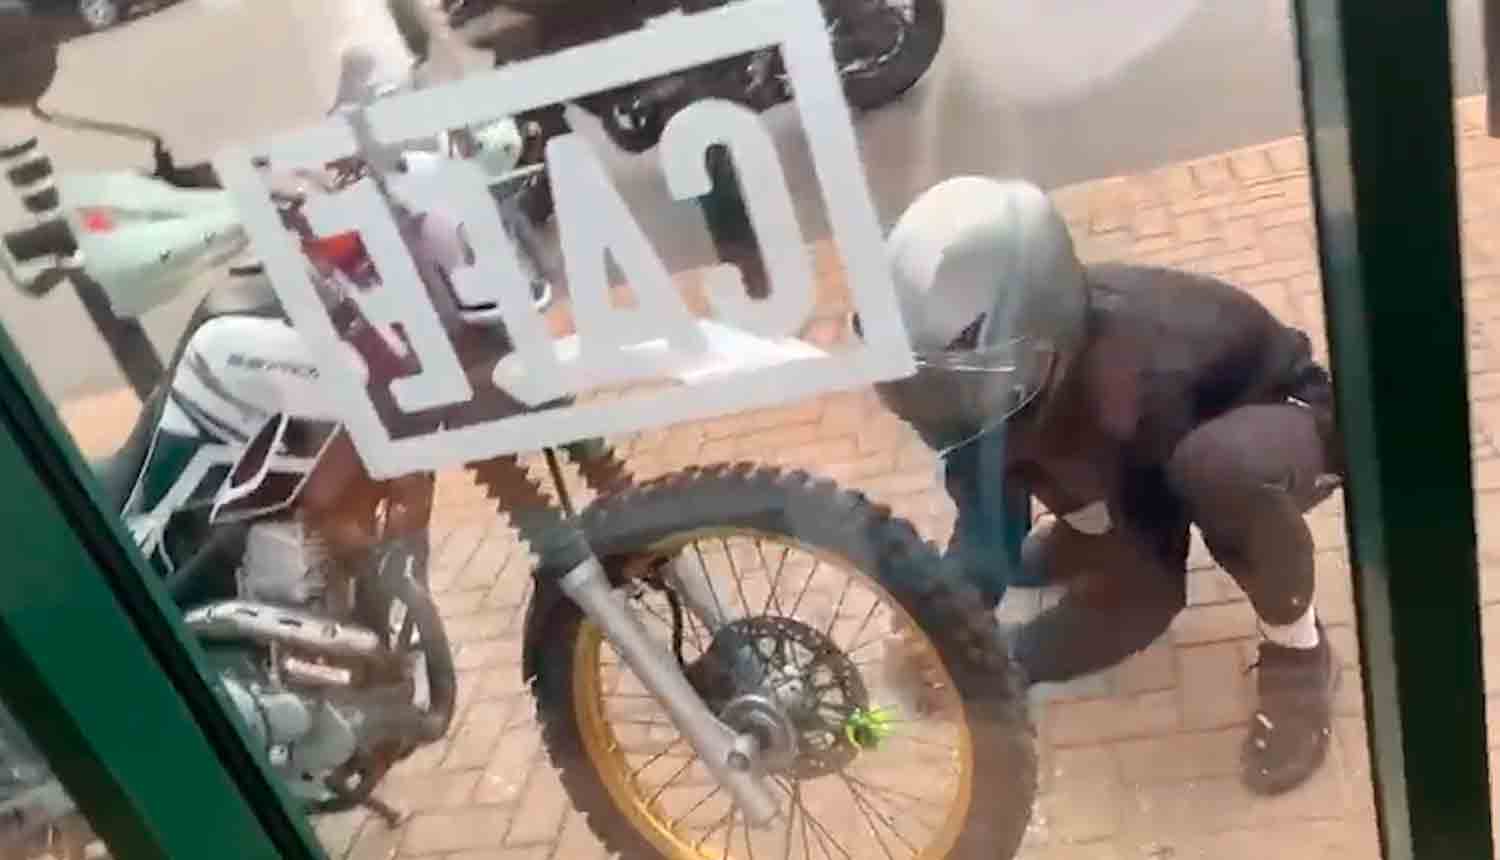 Video: Ladri rubano una moto usando una pietra di fronte a un bar pieno e nessuno fa nulla. Foto: Riproduzione Twitter @MCNnews